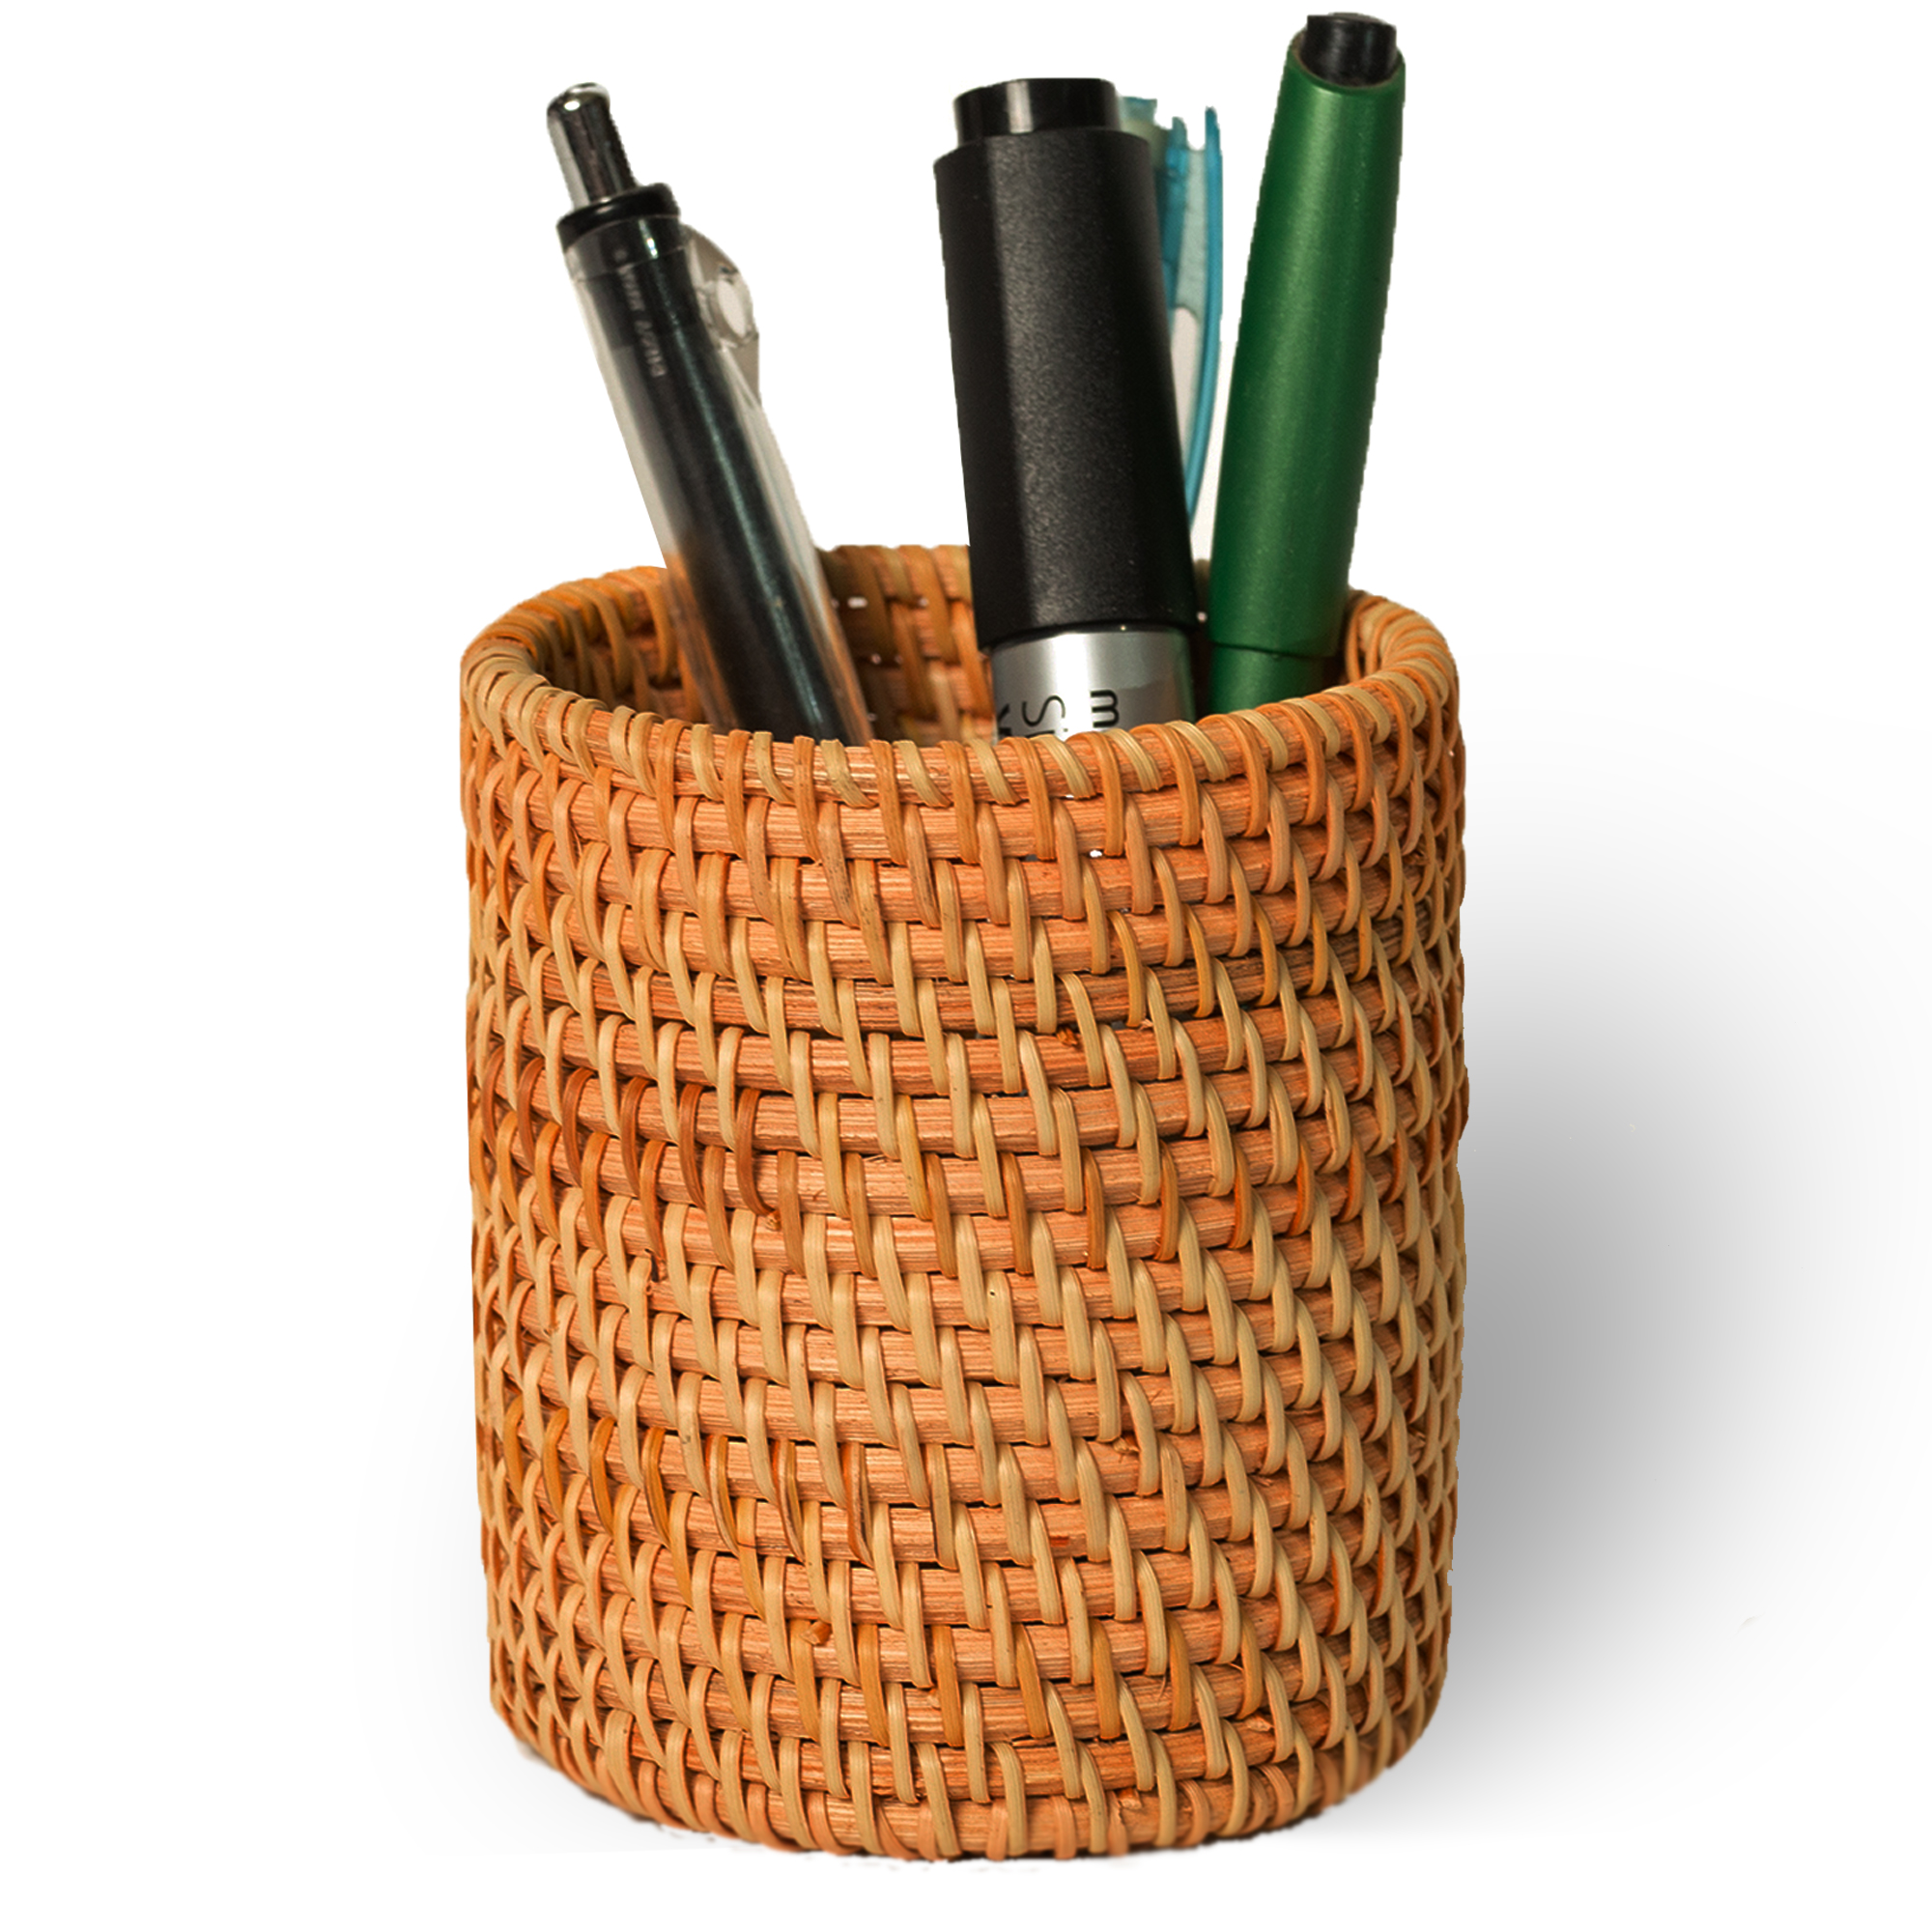 Ống cắm bút bằng mây đan thủ công (APH07), dụng cụ đựng bút để bàn bằng nguyên liệu thiên nhiên thân thiện môi trường